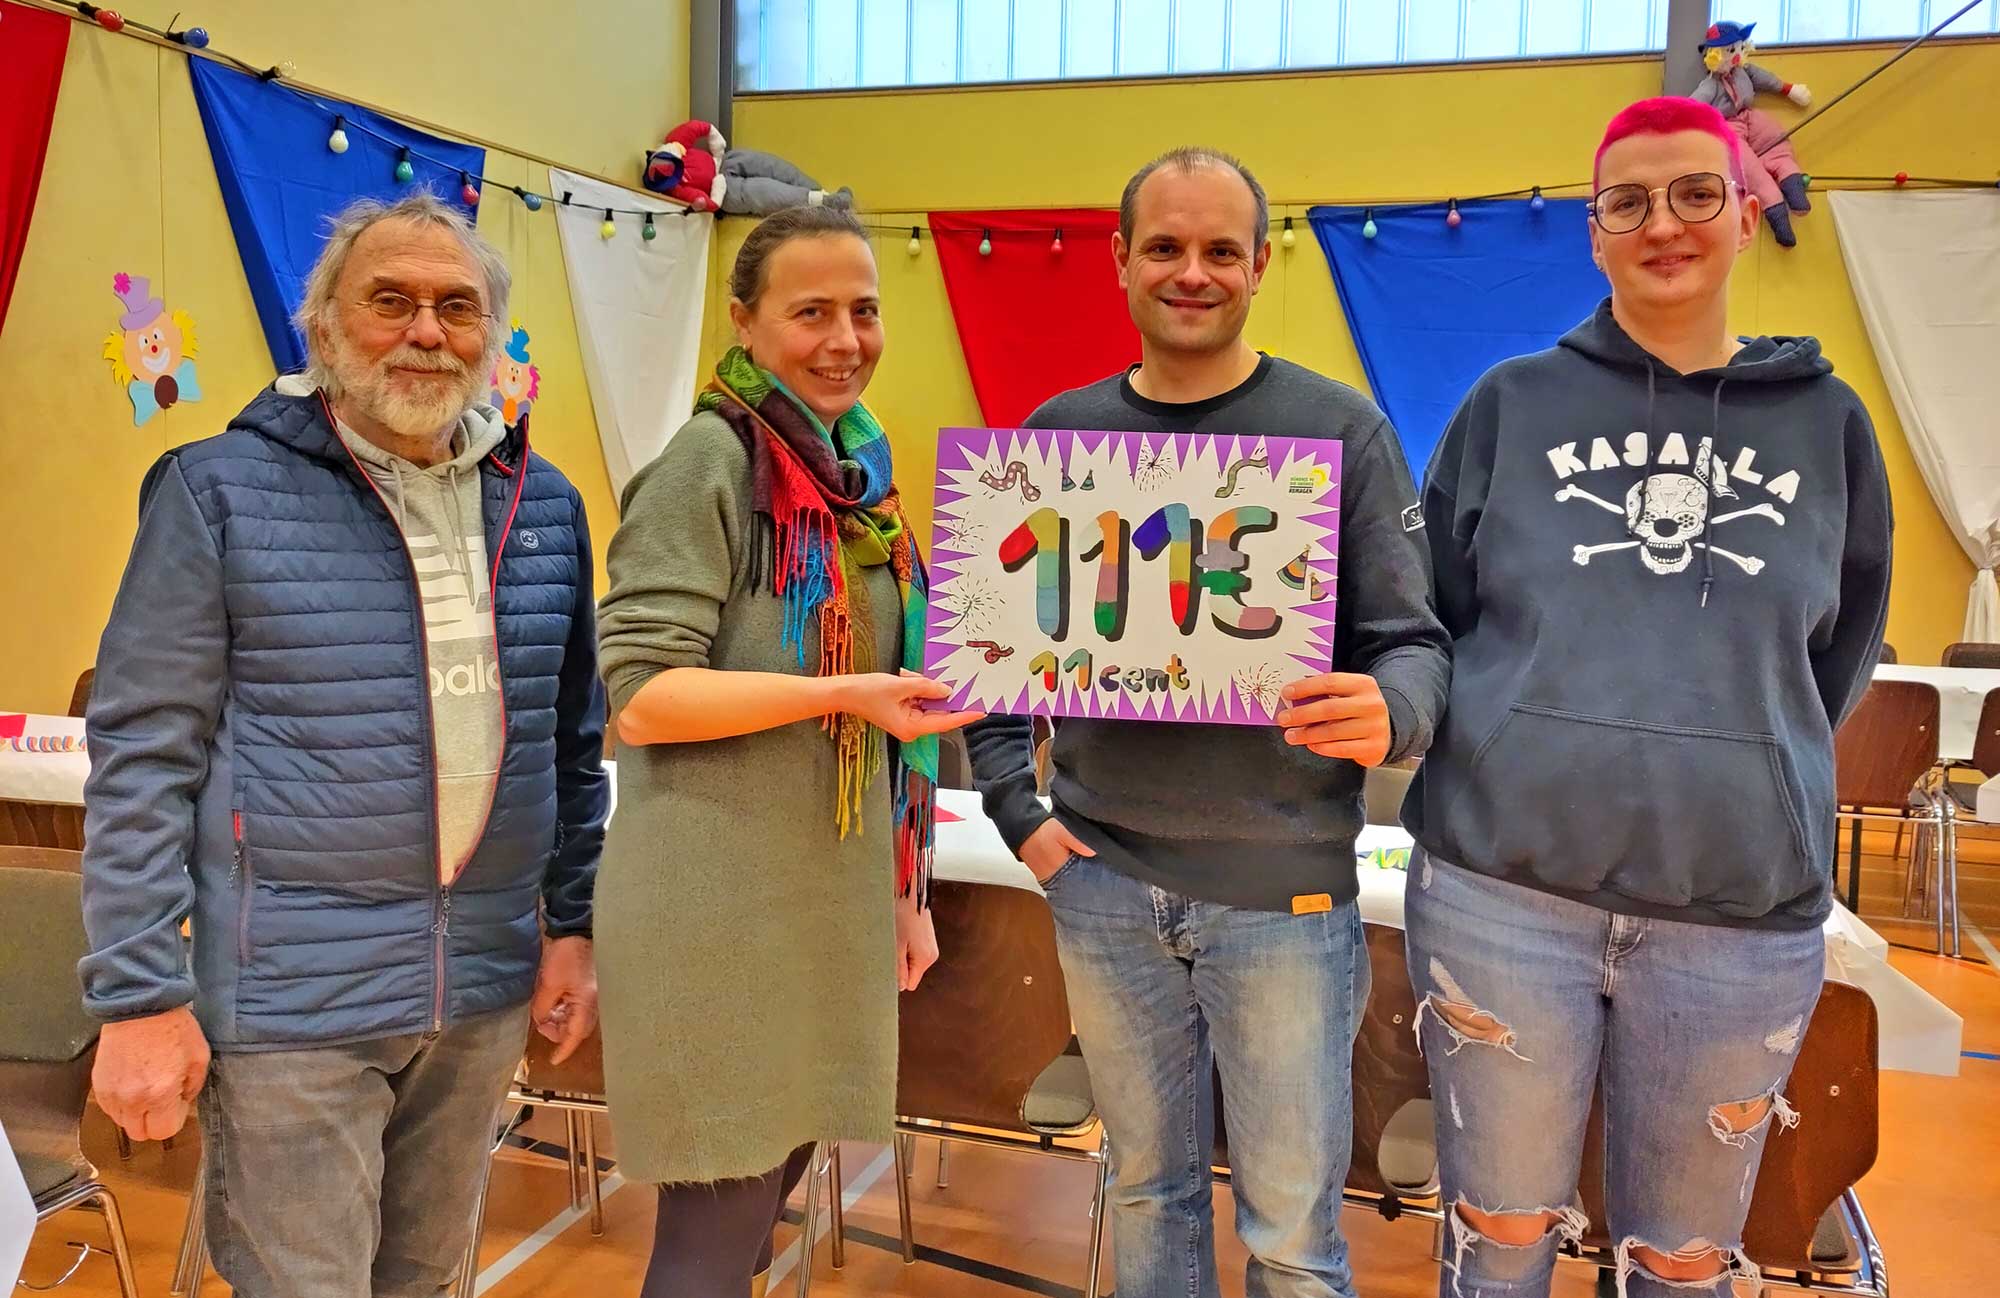 Foto (privat): Die GRÜNE Fraktion im Ortsbeirat Kripp übergab 111,11 € Spende an den SV Kripp – wie immer handelt es sich bei der Spende um gesammelte Sitzungsgelder GRÜNER Stadtratsmitglieder